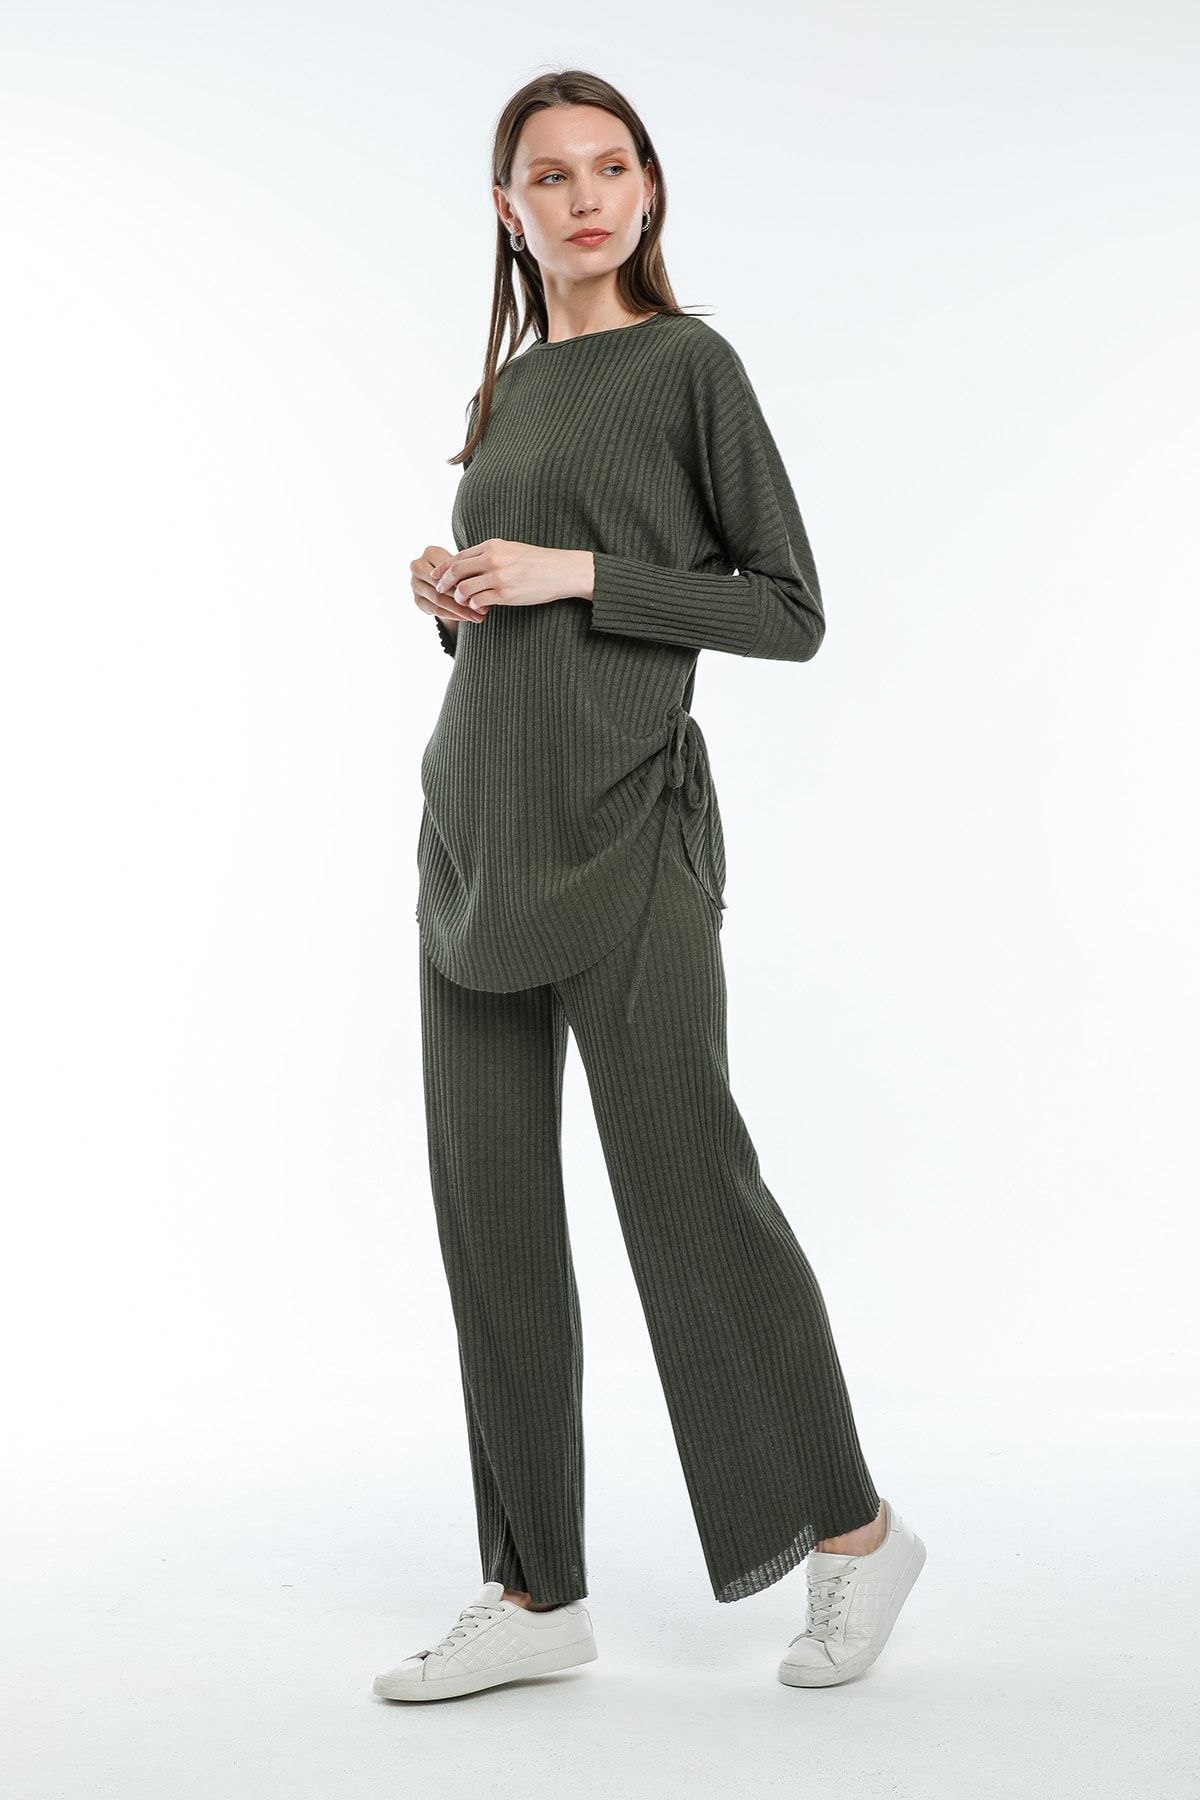 Zoze Tekstil Kadın Haki Yanları Bağcıklı Tunik Pantolon Takım